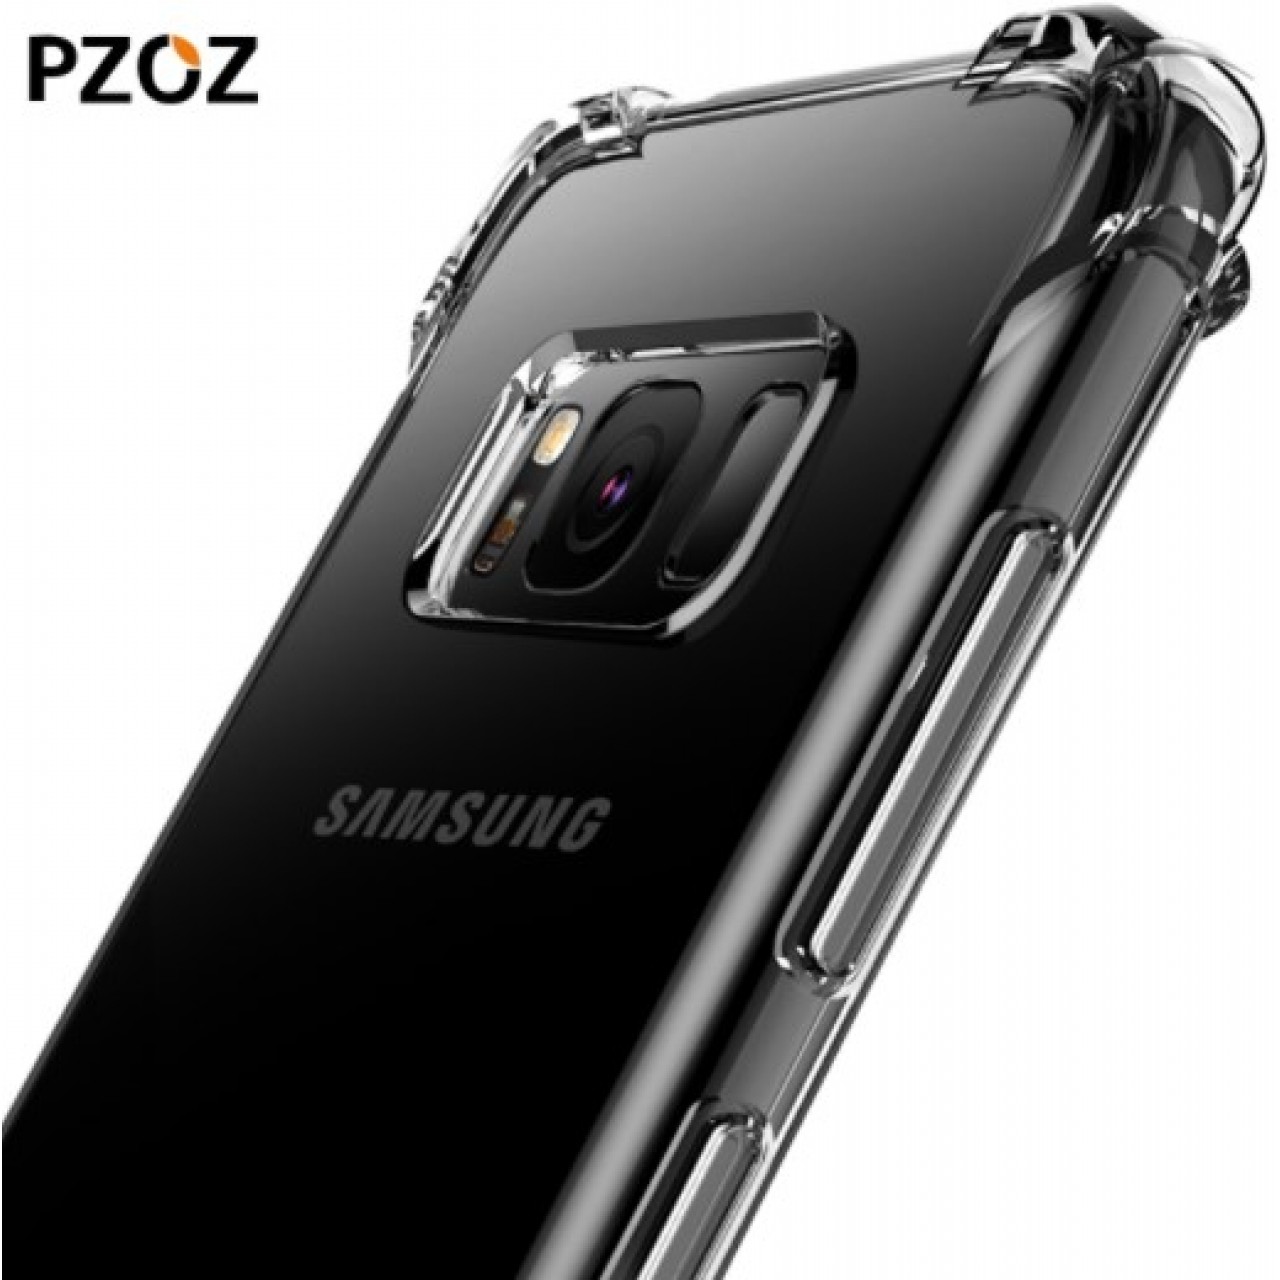 Θήκη Samsung Galaxy (G955) S8 Plus Pzoz silicone (Σιλικόνης) TPU luxury shockproof Clear Protective armor - 3442 - Διάφανο - OEM